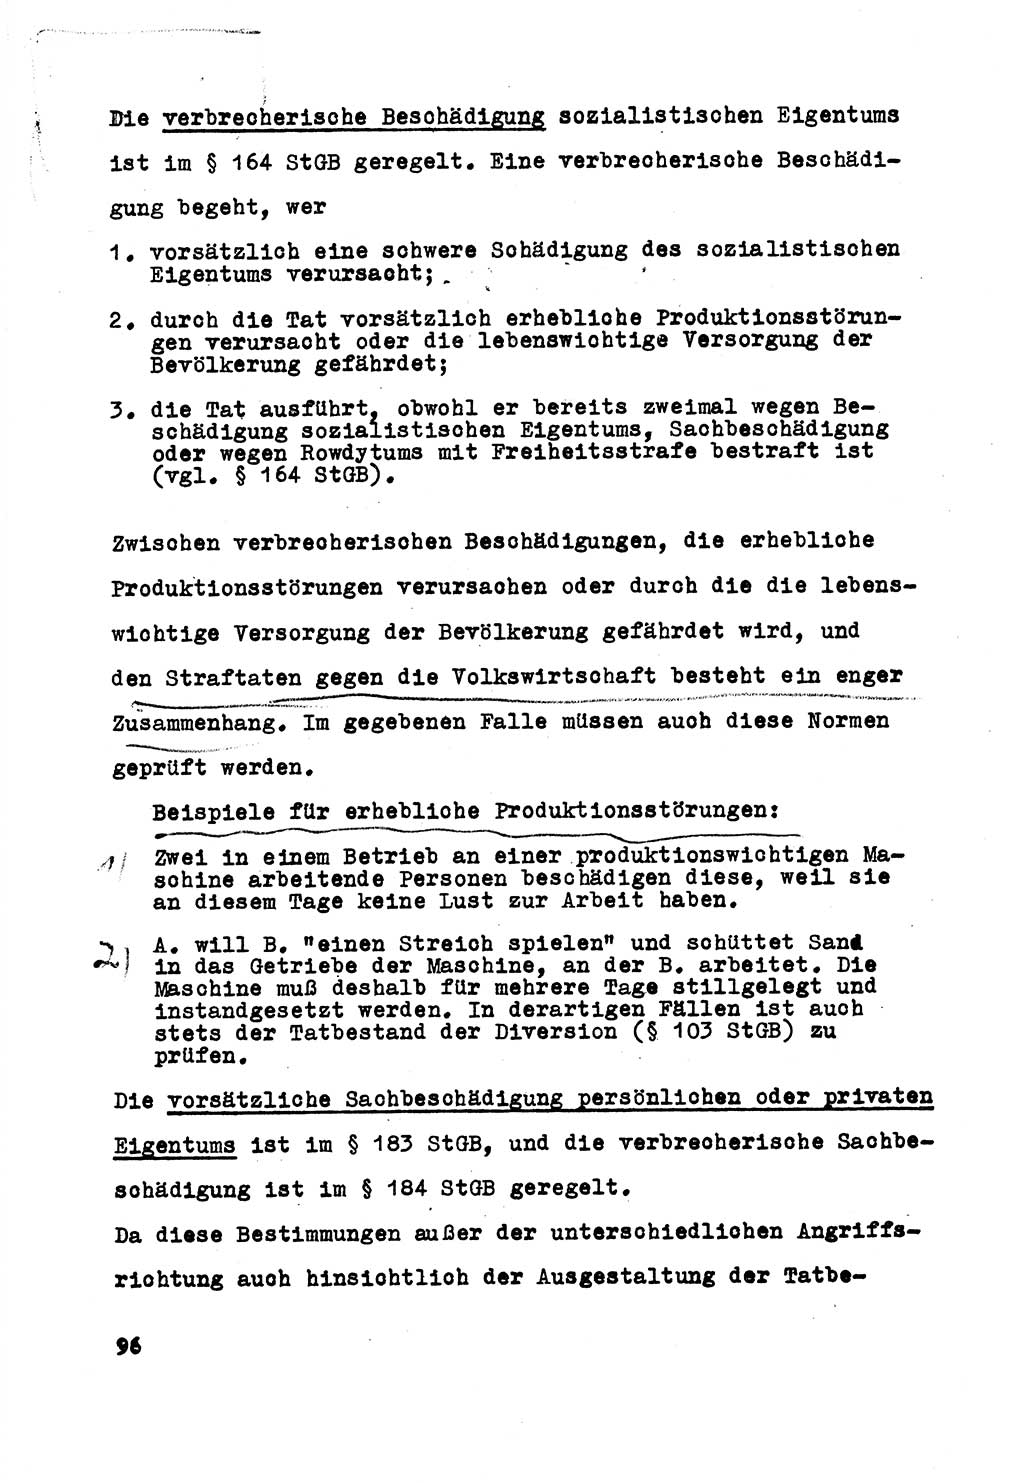 Strafrecht der DDR (Deutsche Demokratische Republik), Besonderer Teil, Lehrmaterial, Heft 5 1970, Seite 96 (Strafr. DDR BT Lehrmat. H. 5 1970, S. 96)